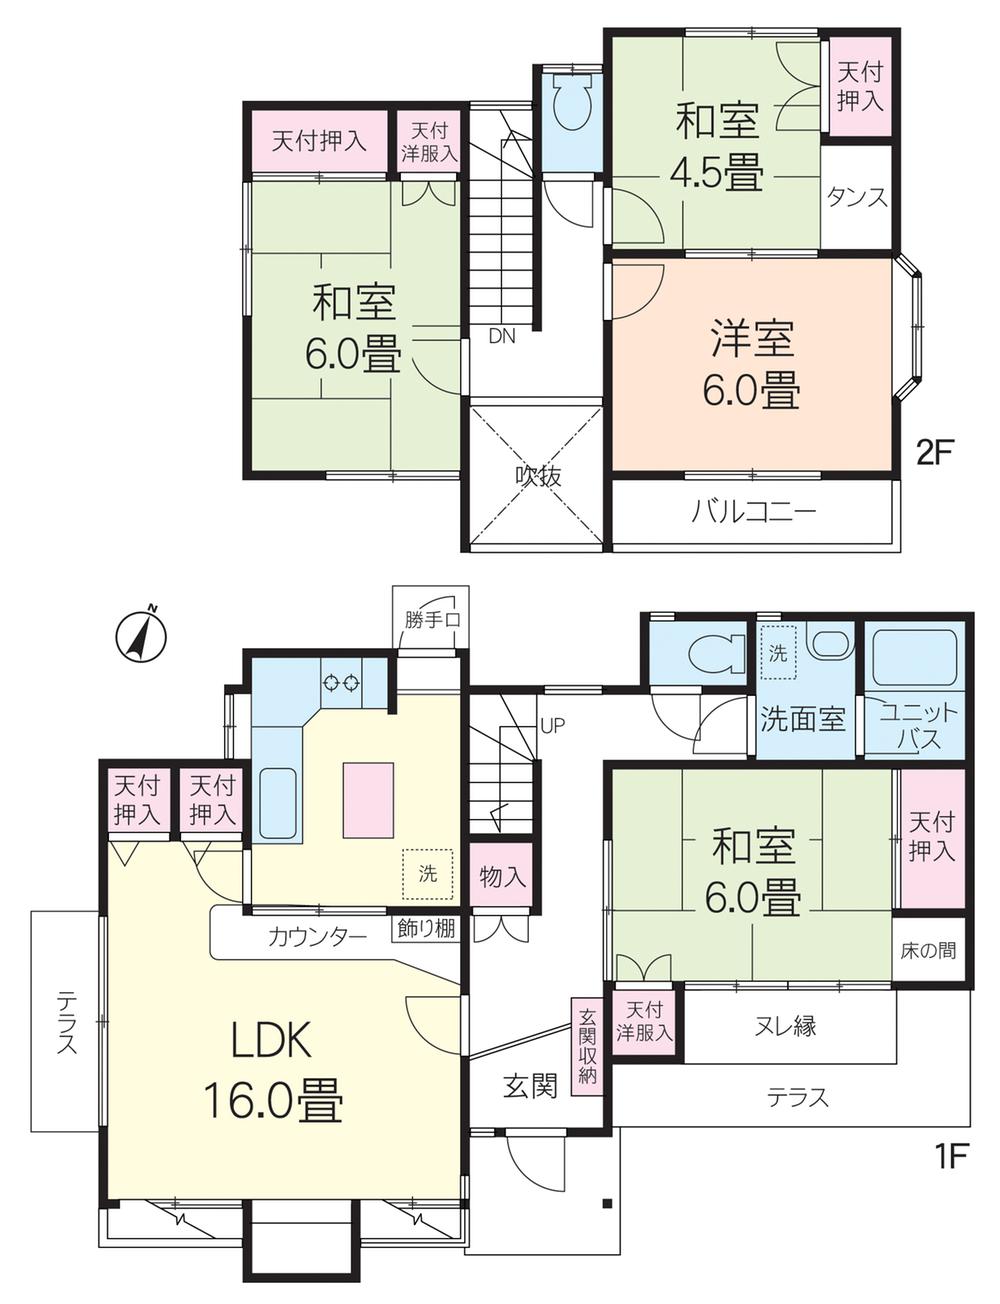 Floor plan. 9.3 million yen, 4LDK, Land area 206.38 sq m , Building area 101.64 sq m